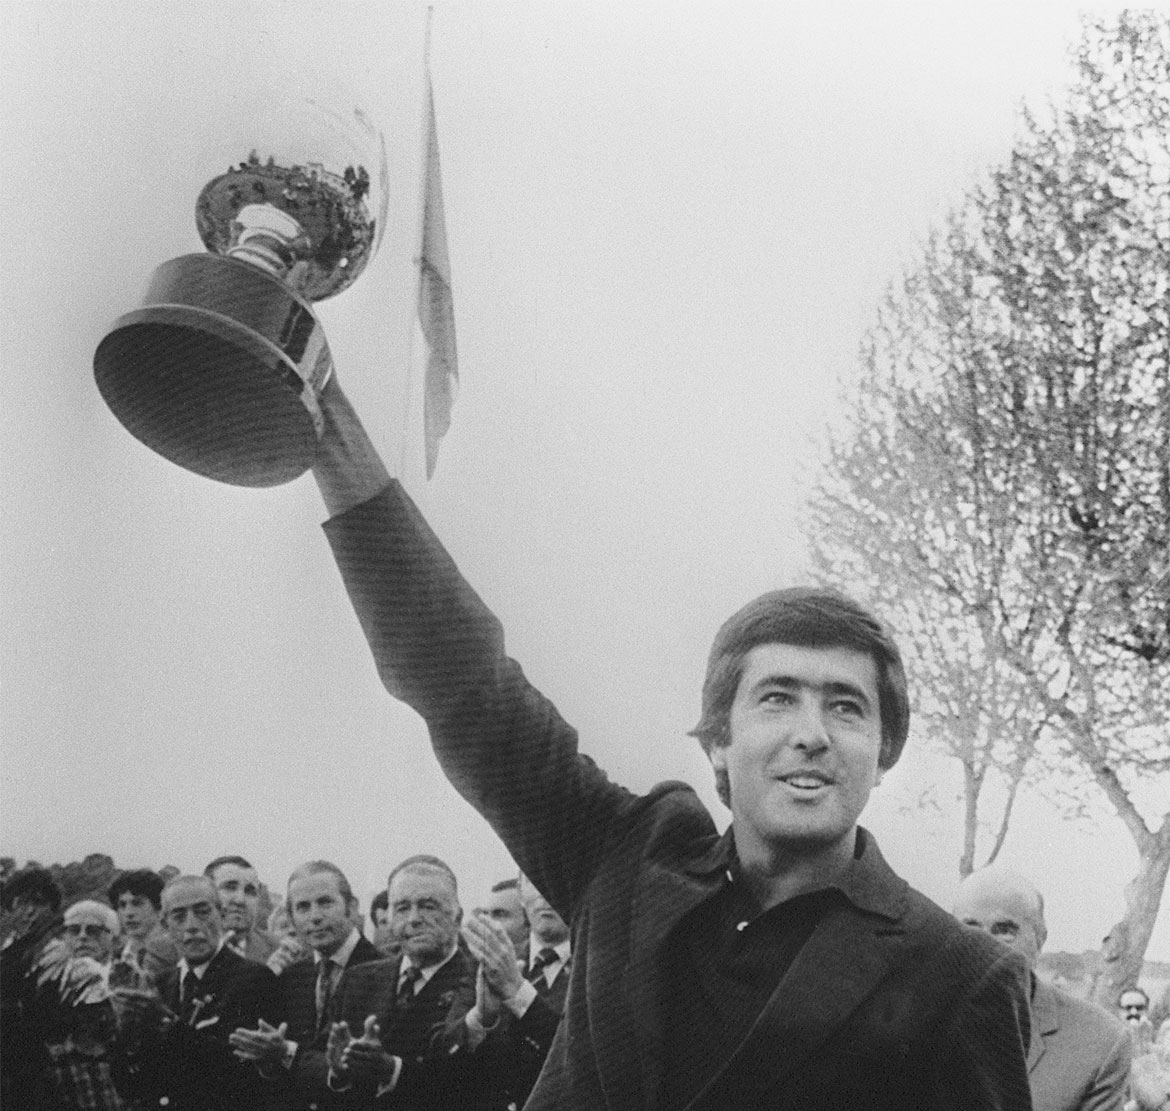 Severiano Ballesteros hält einen Pokal in der Hand hinter ihm stehen Menschen